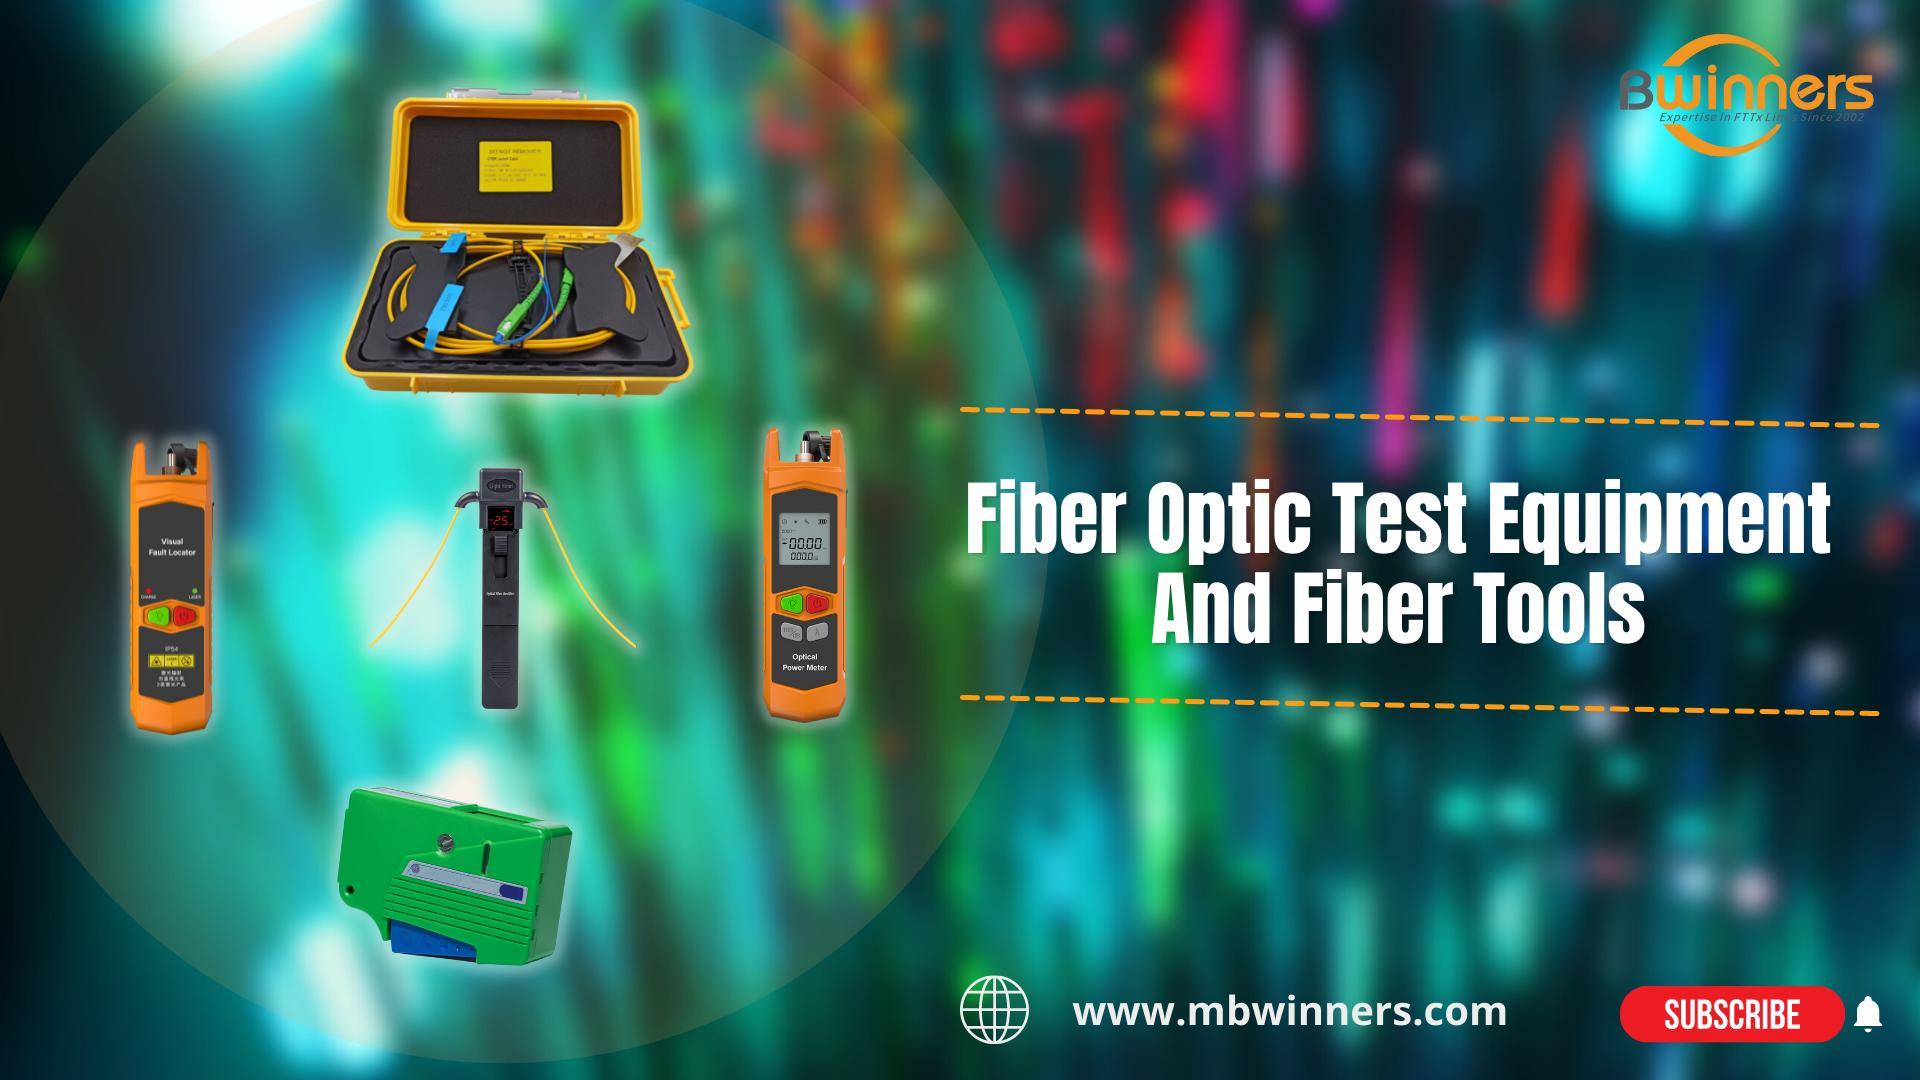 BWN-OTDR-LC2 Boîte de lancement de fibres | MBN-OFI-35 Identifiant en fibre live | Fibre de VFL MBN-VFL-30-C | MBN-OPM-MINI MINI MINI POWER MINDER | Nettoyeur de fibres MBN-OCC | Équipement de test de fibre optique et outils de fibre | #Ftth #fttx | Bwinn